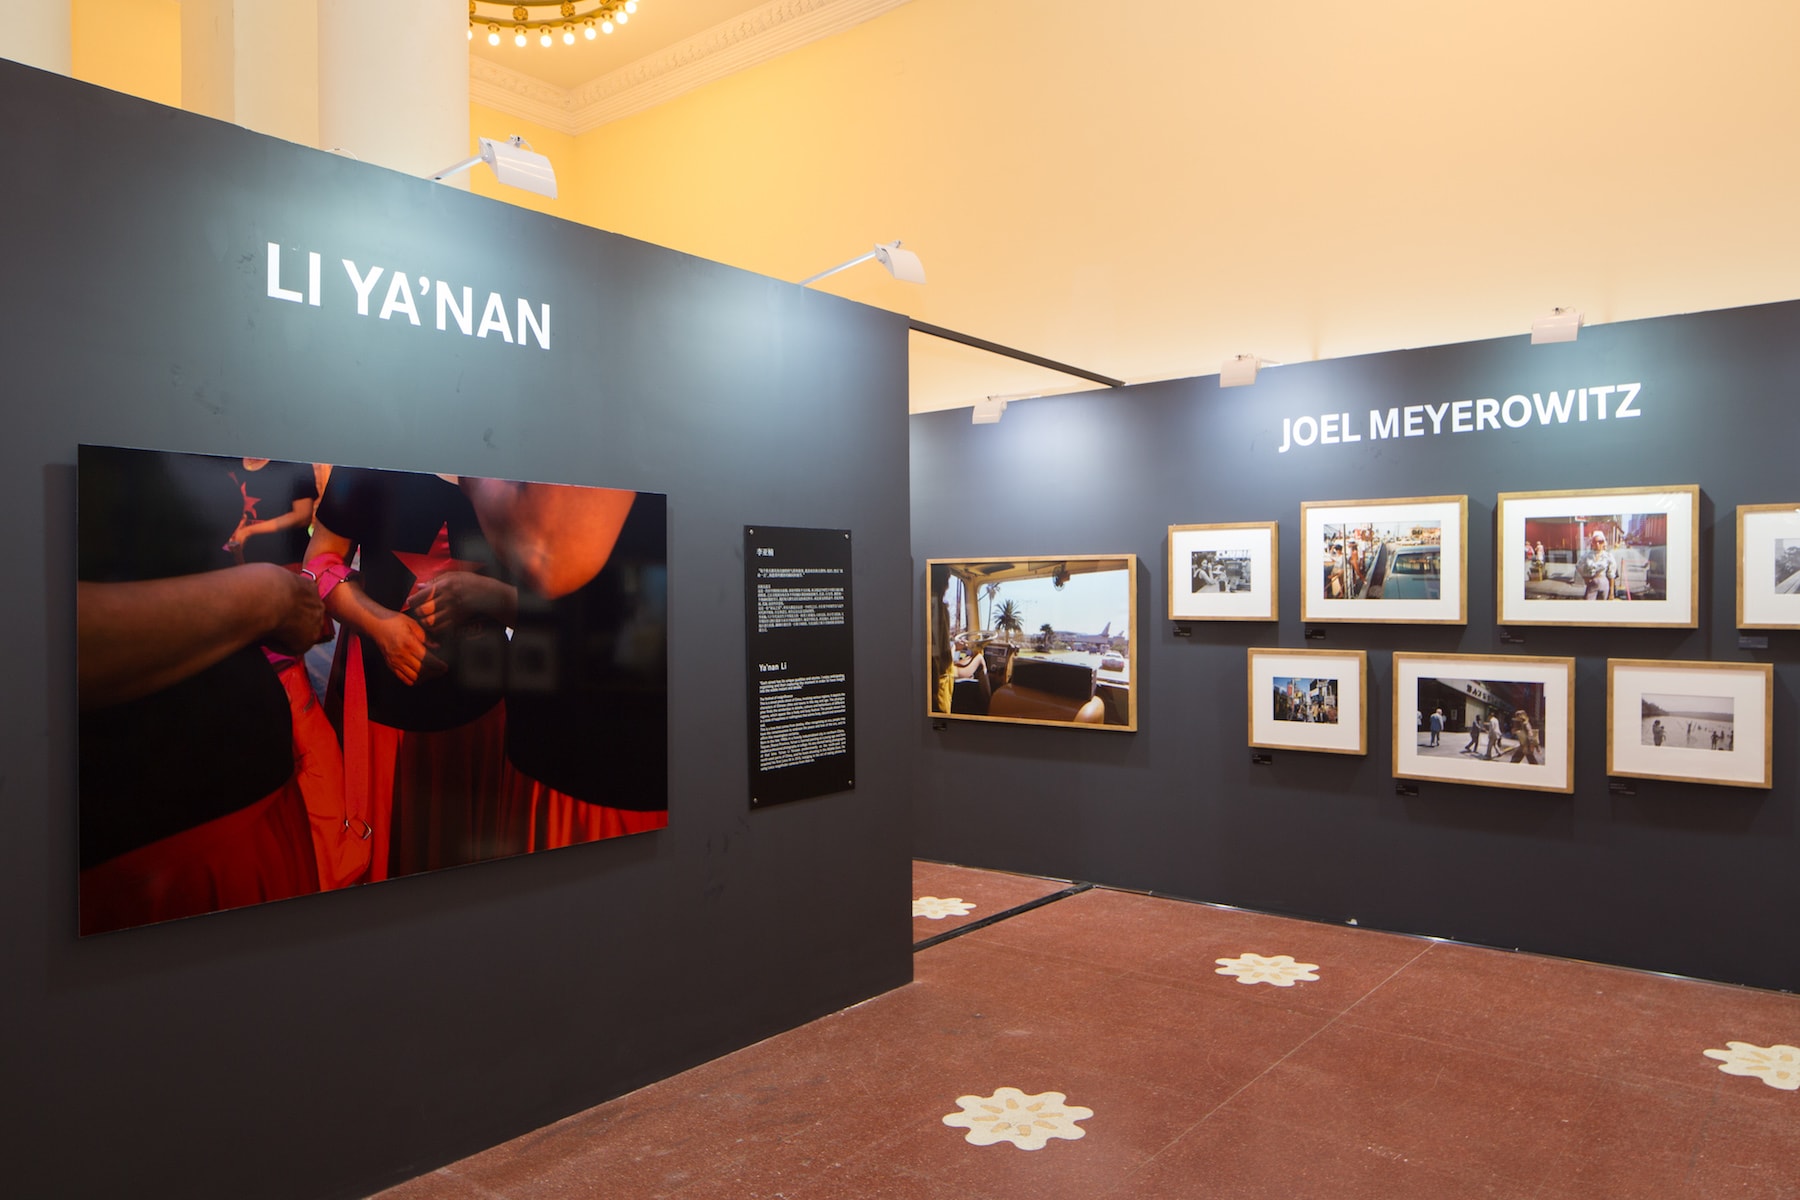 Leica 於影像上海艺术博览会舉辦街拍摄影主題展覽